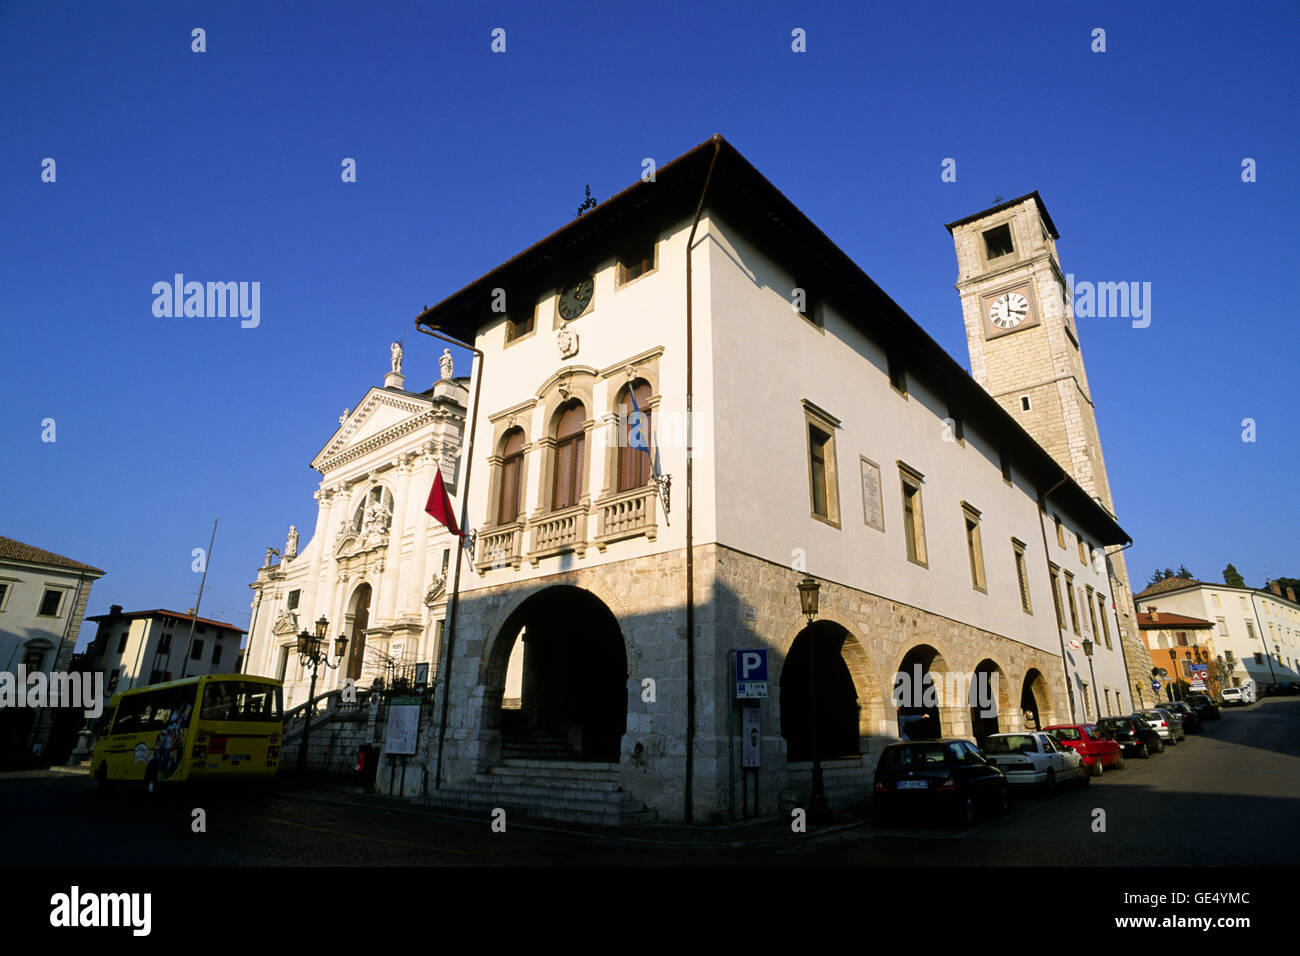 Italy, Friuli Venezia Giulia, San Daniele del Friuli, Palazzo Comunale, loggia, Biblioteca Guarneriana (15th century) Stock Photo